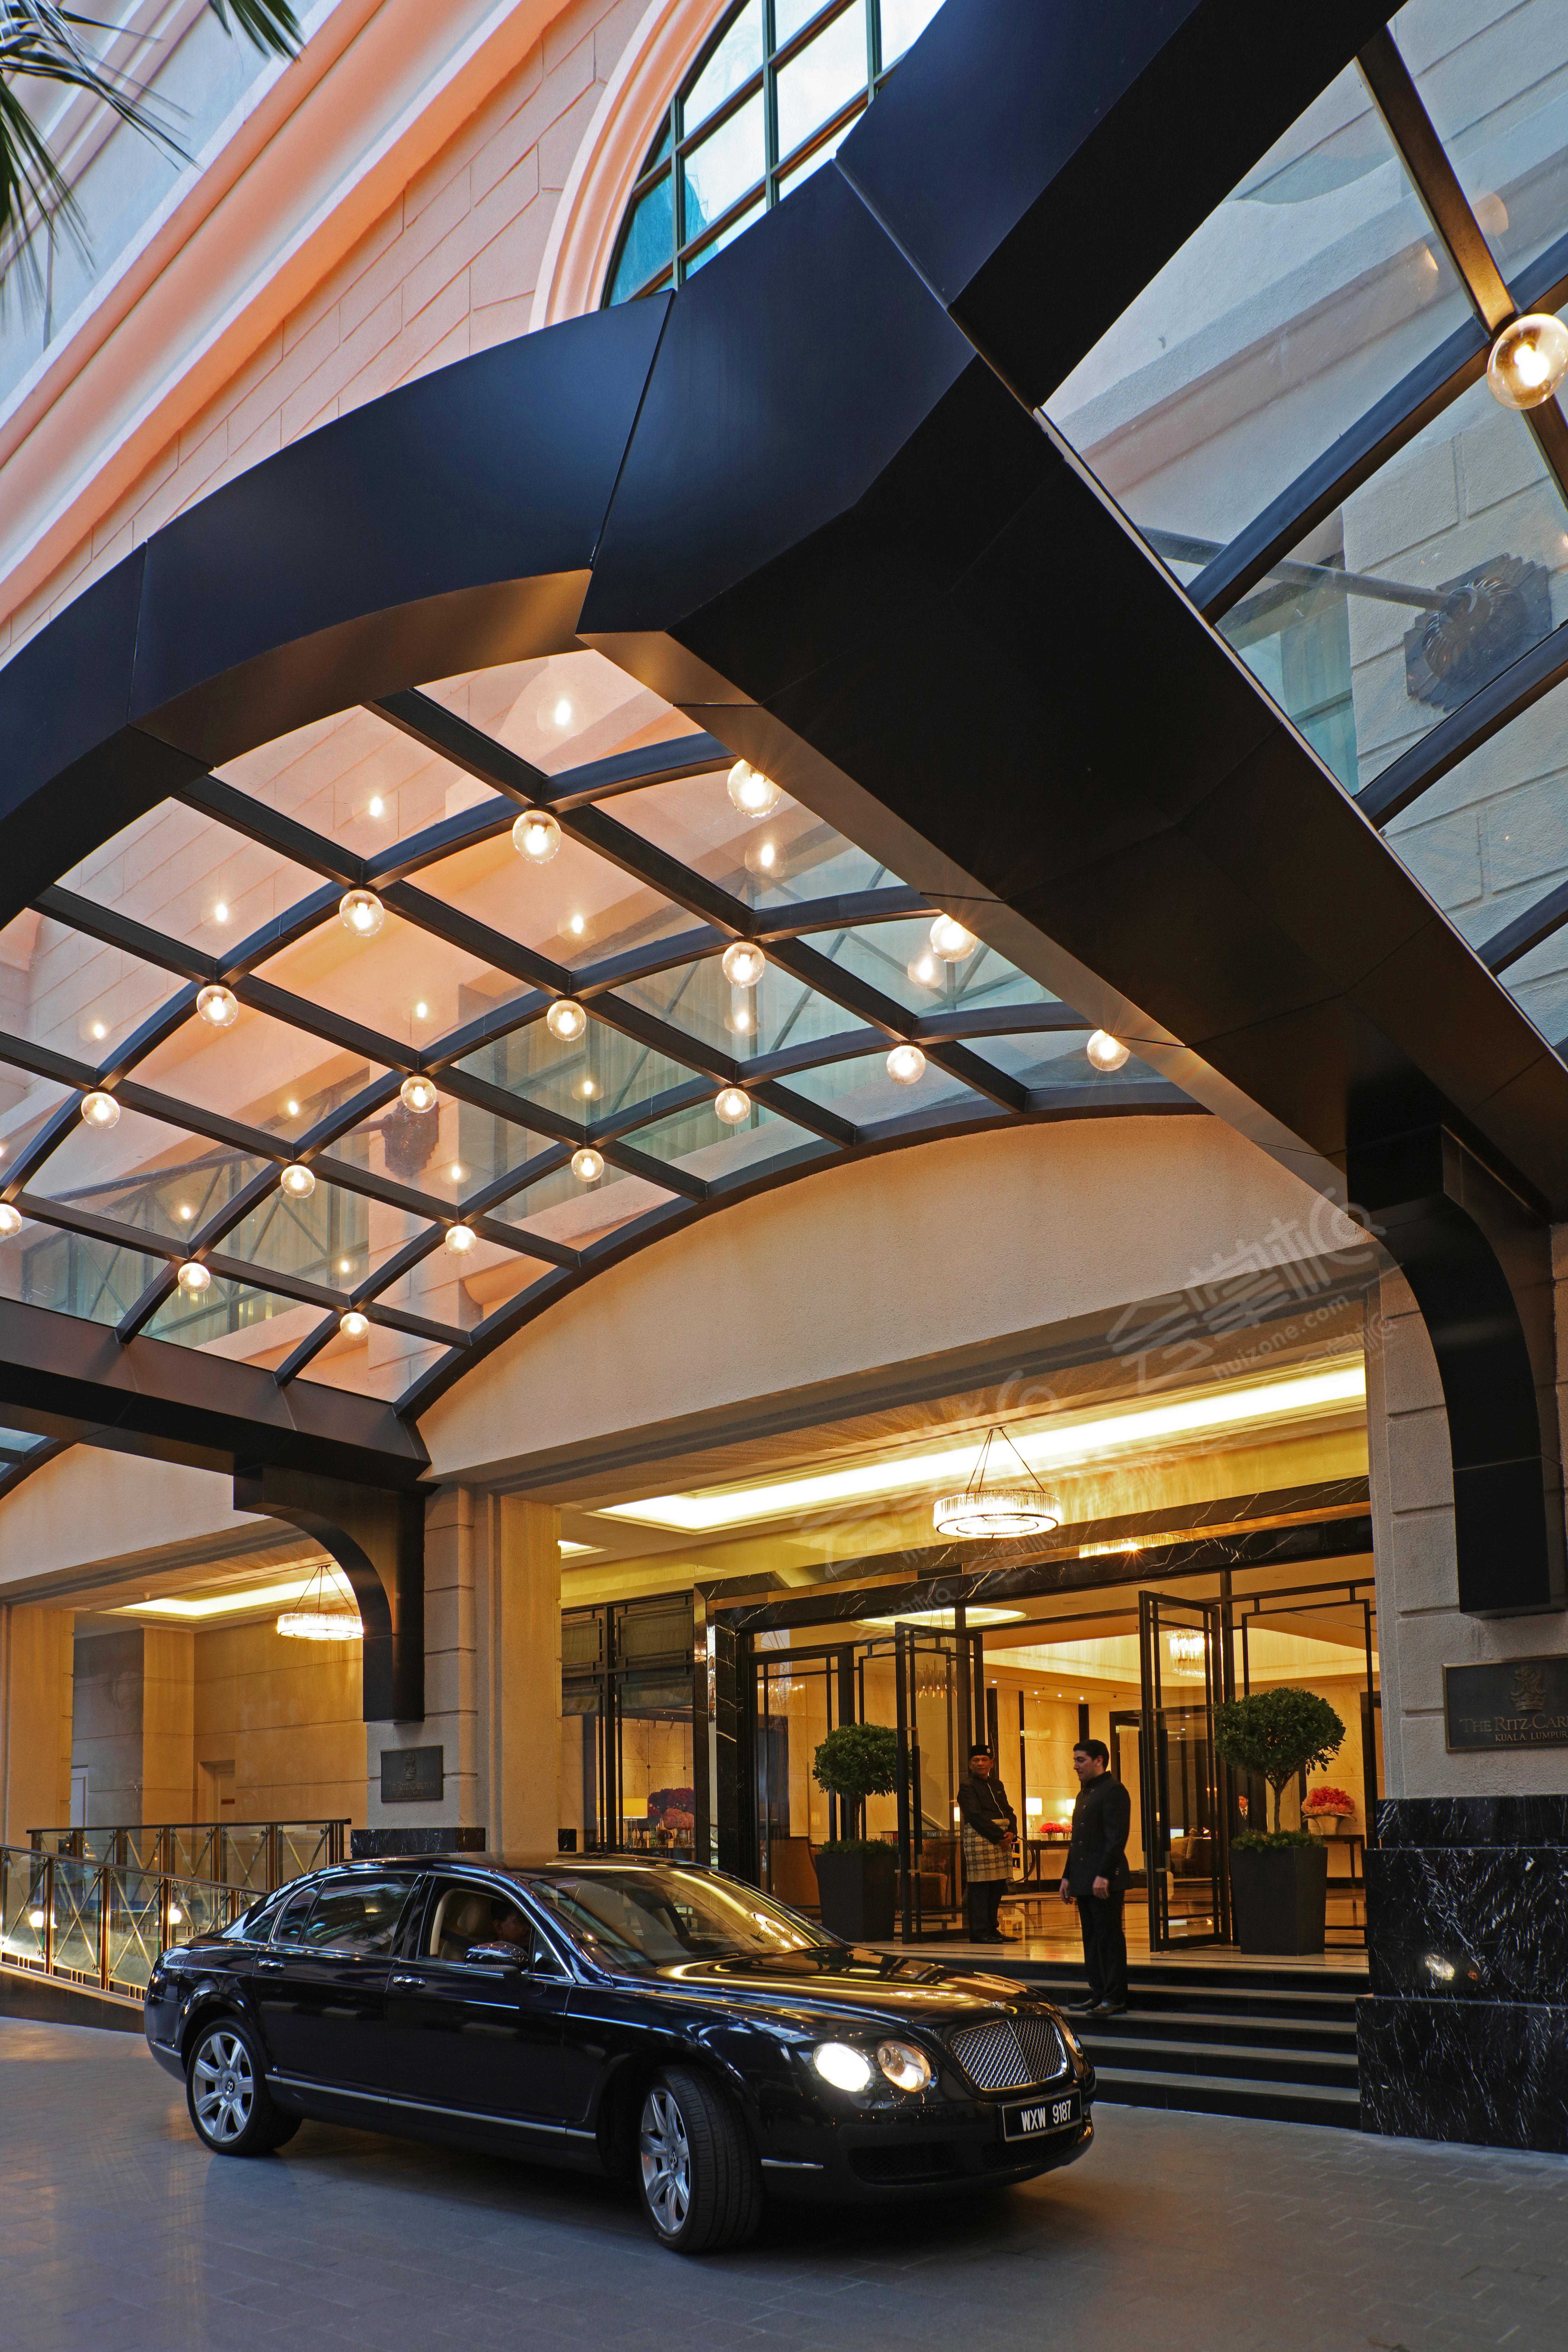 吉隆坡丽思卡尔顿酒店(The Ritz-Carlton, Kuala Lumpur)